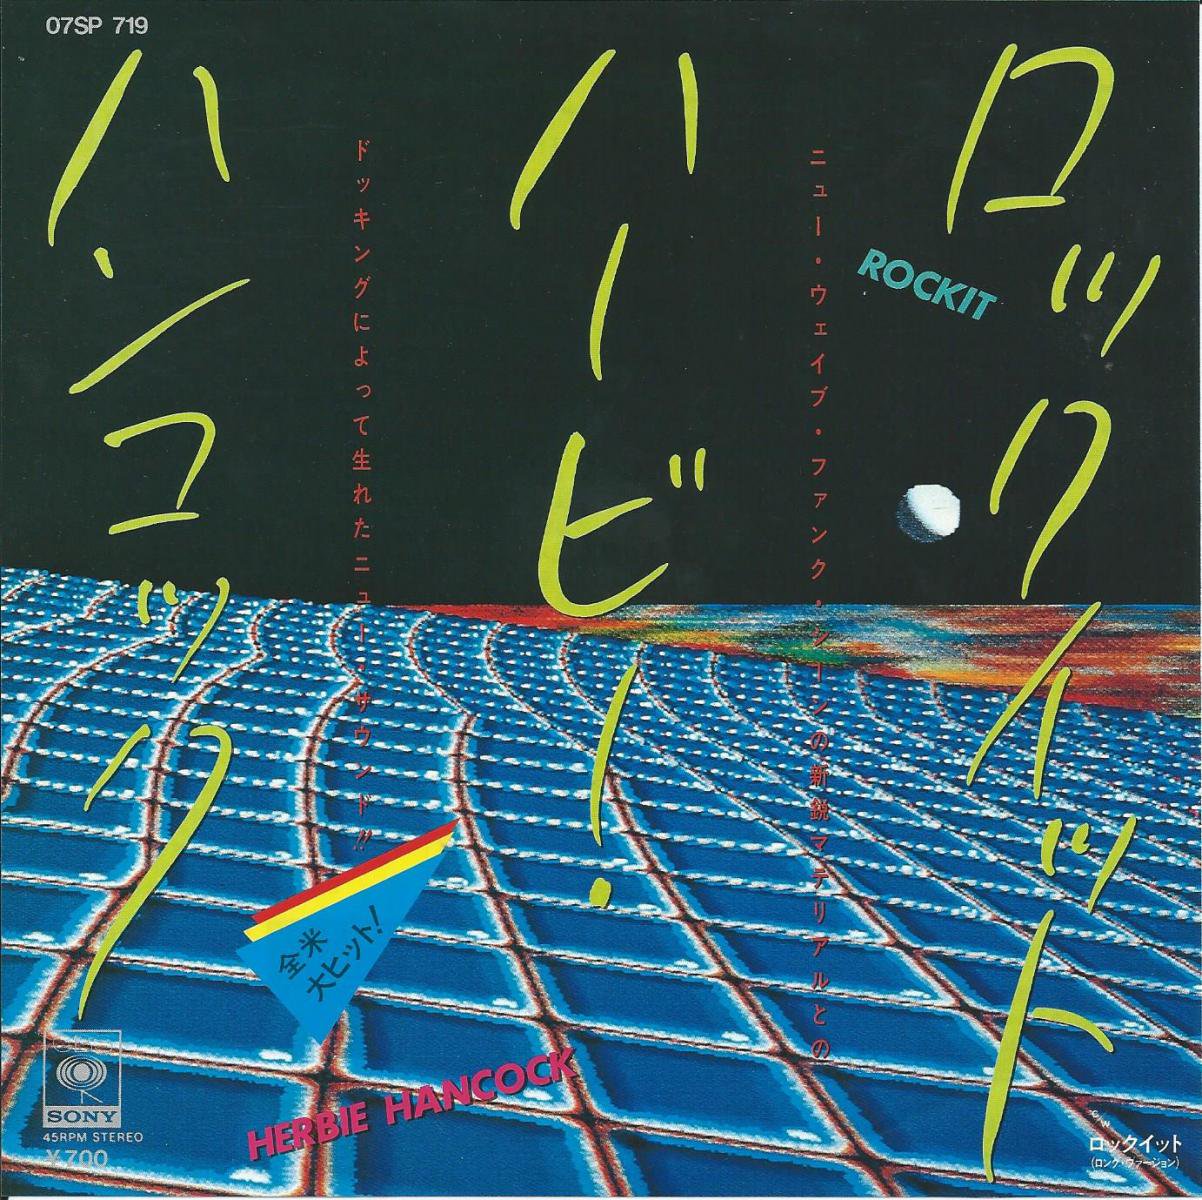 SOUL / FUNK / RARE GROOVE (LP+45s) - JAPAN PRESS LP & 45s - HIP